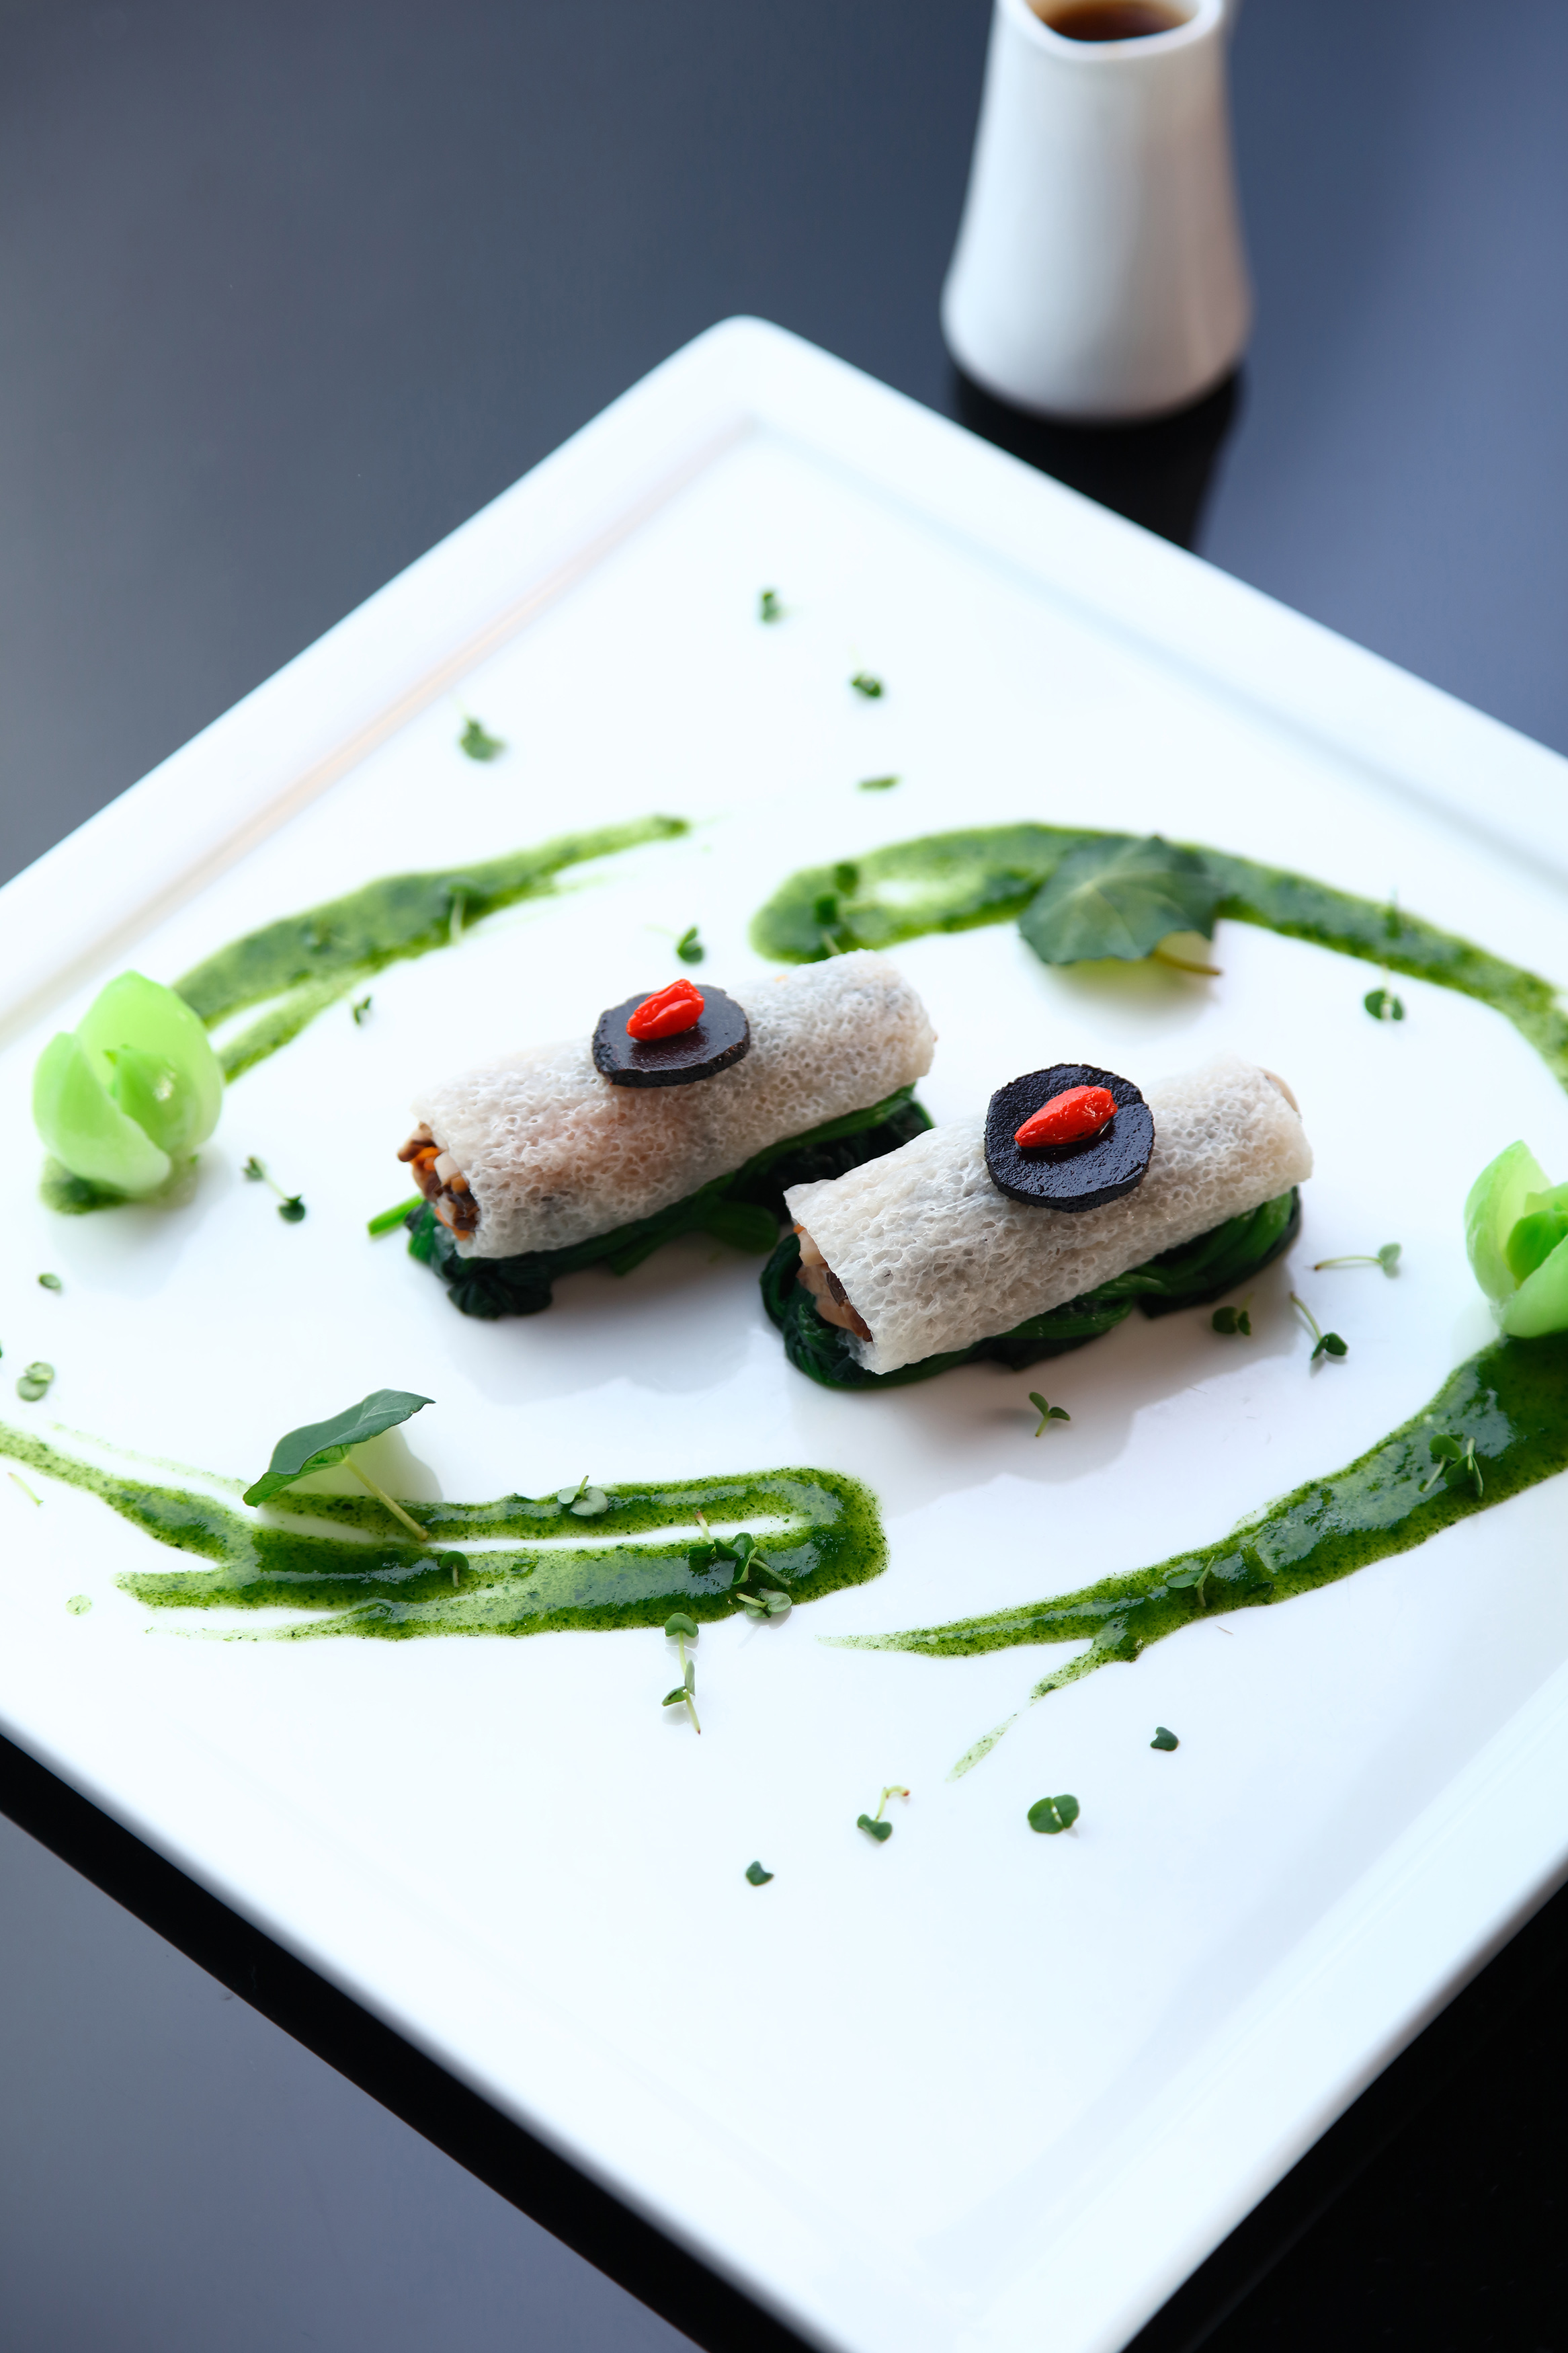 天津丽思卡尔顿酒店精品粤菜为您呈现非凡味蕾体验